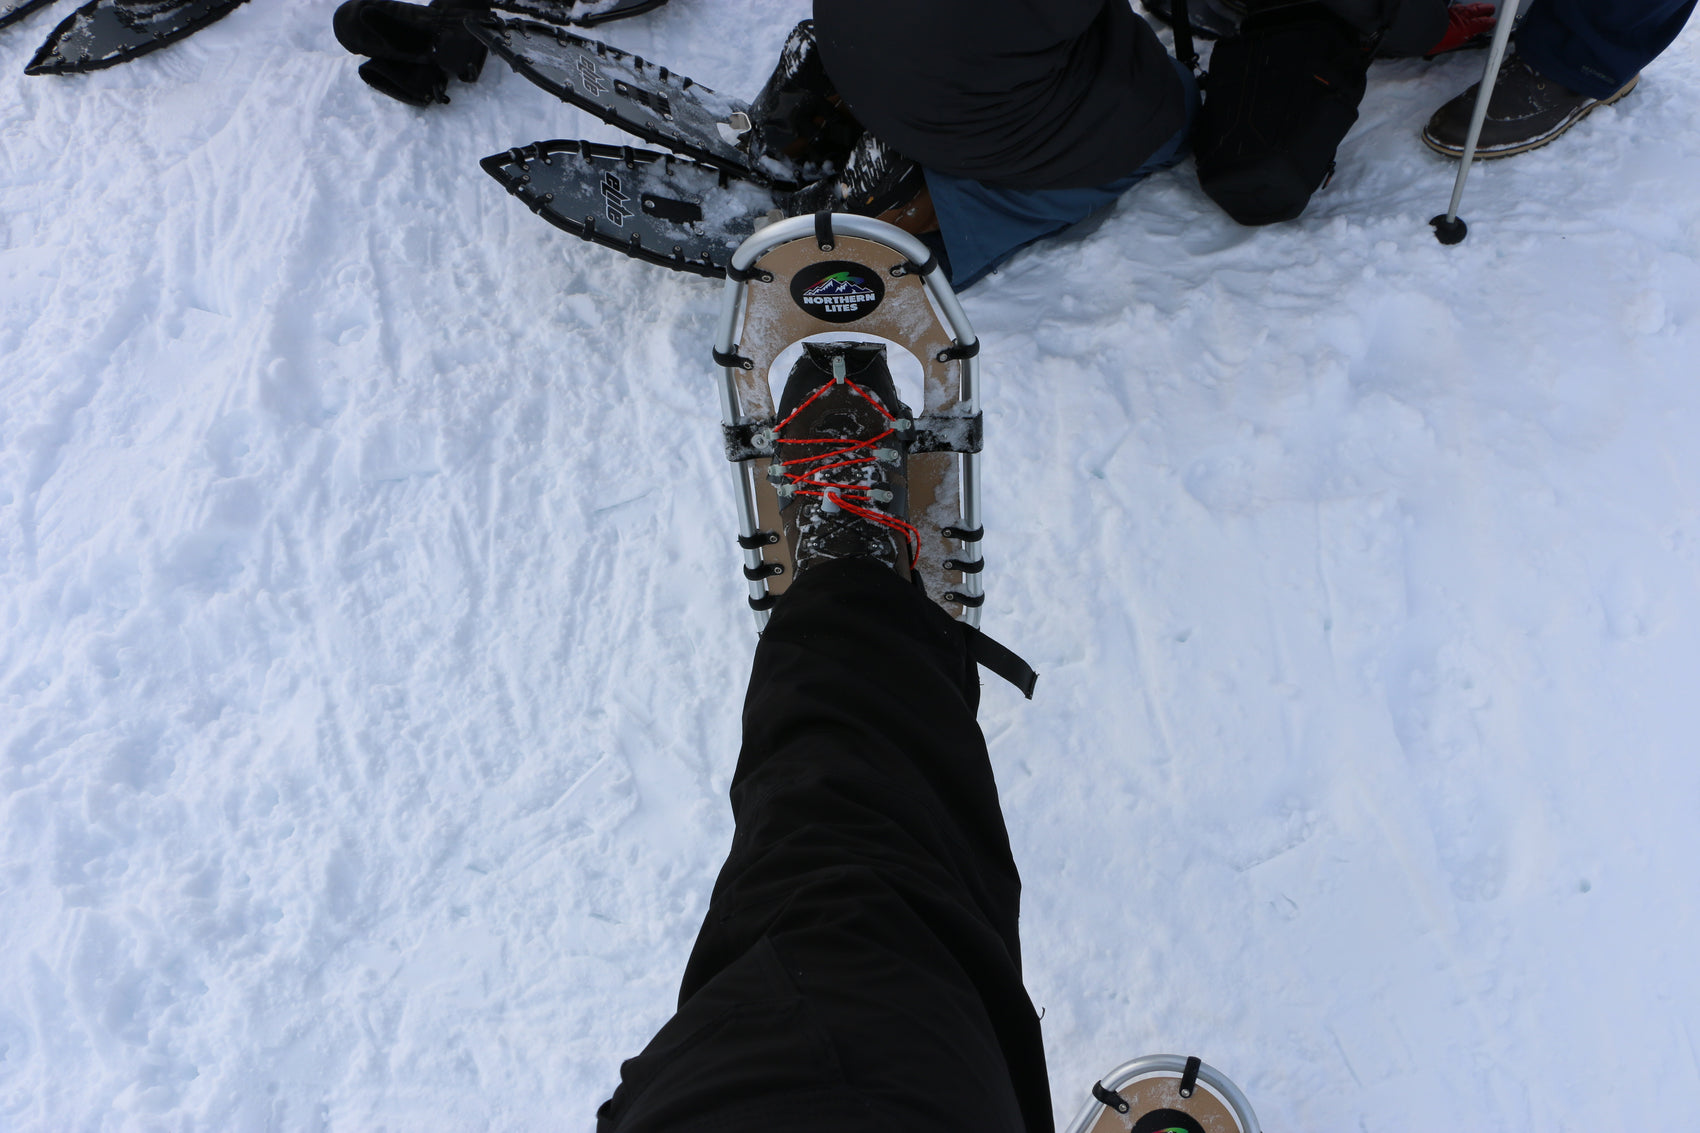 snowshoes - northern lites - speed bindings